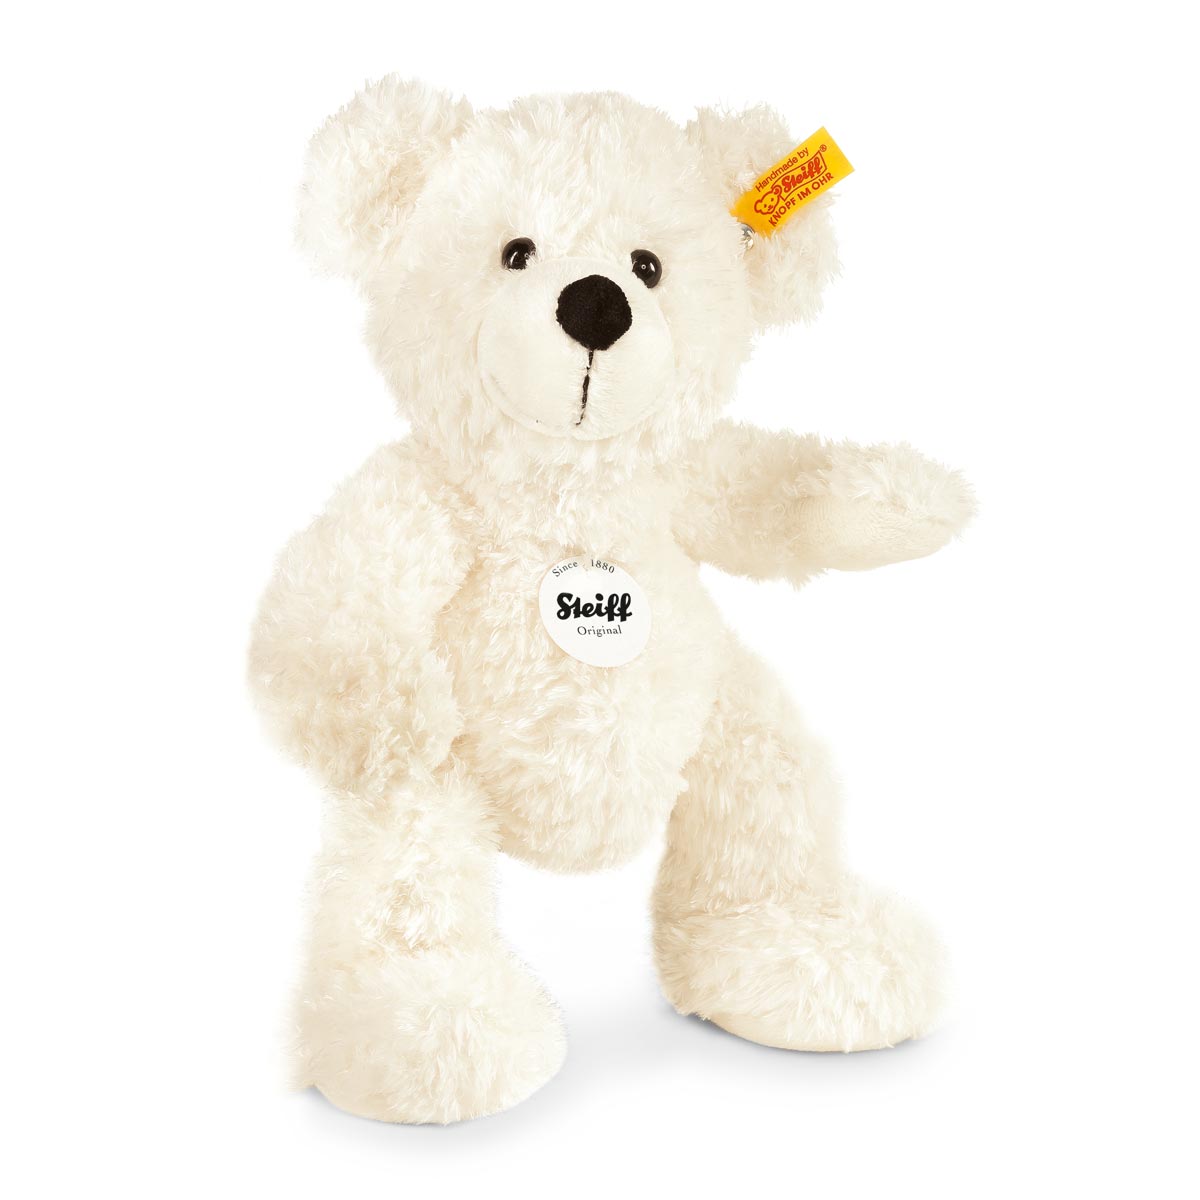 Steiff Lotte White Teddy Bear - 28 cm